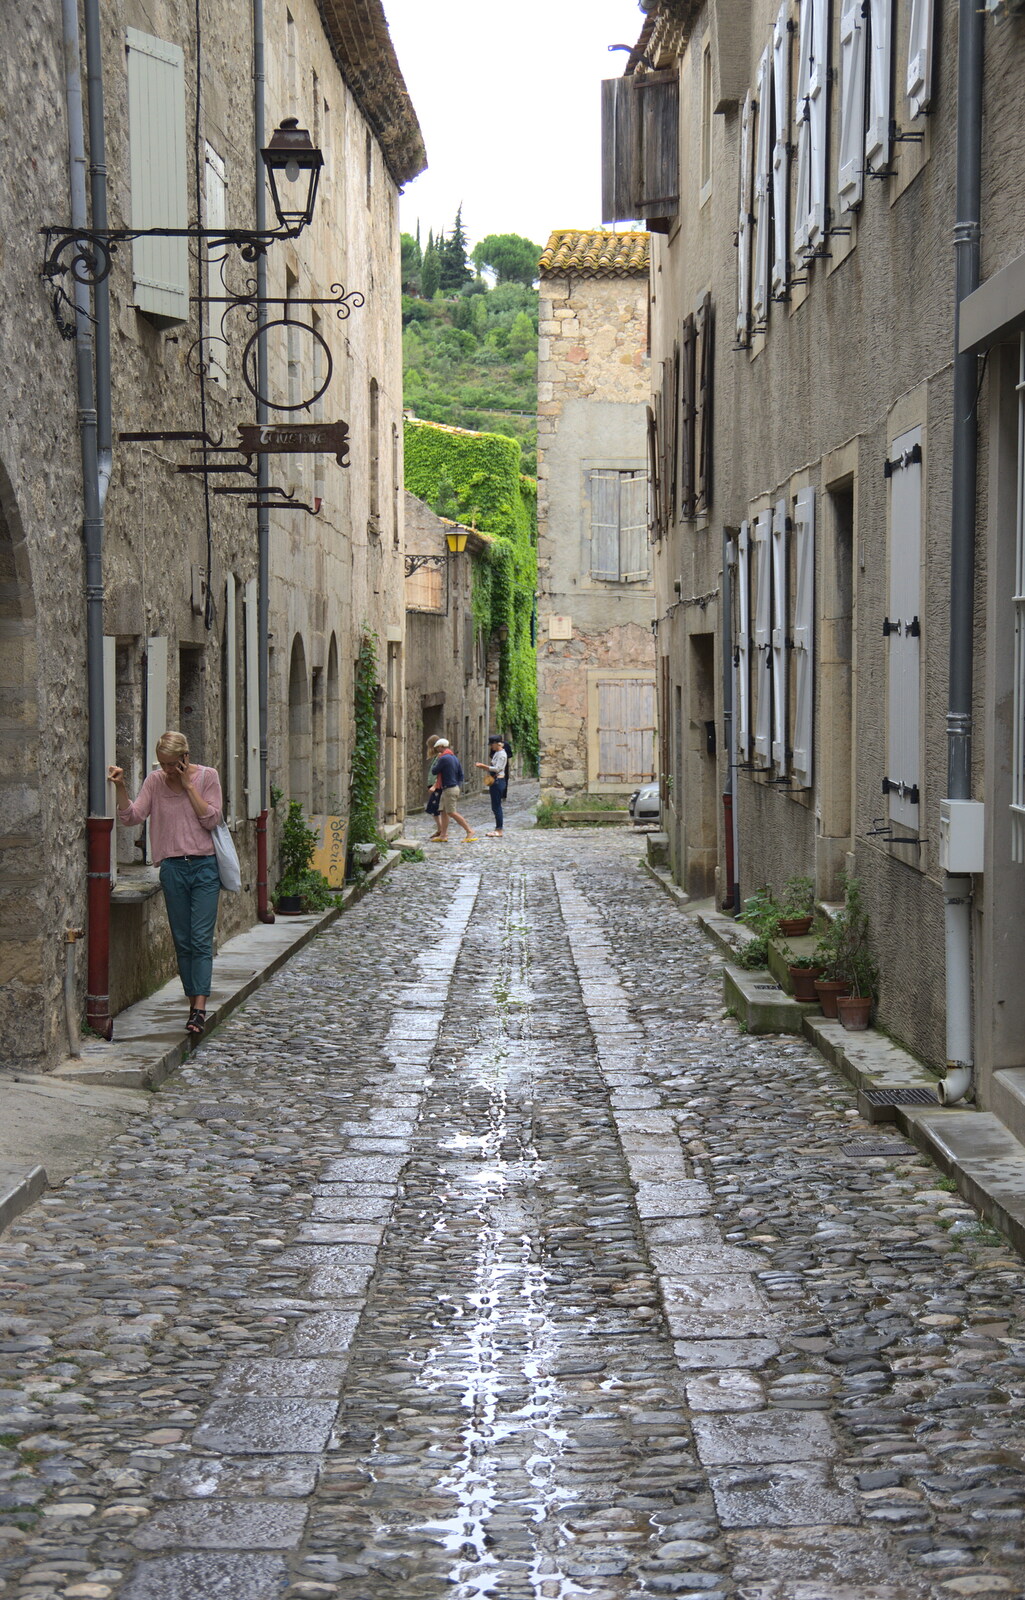 A cobbled back street from Abbaye Sainte-Marie de Lagrasse and The Lac de la Cavayère, Aude, France - 10th August